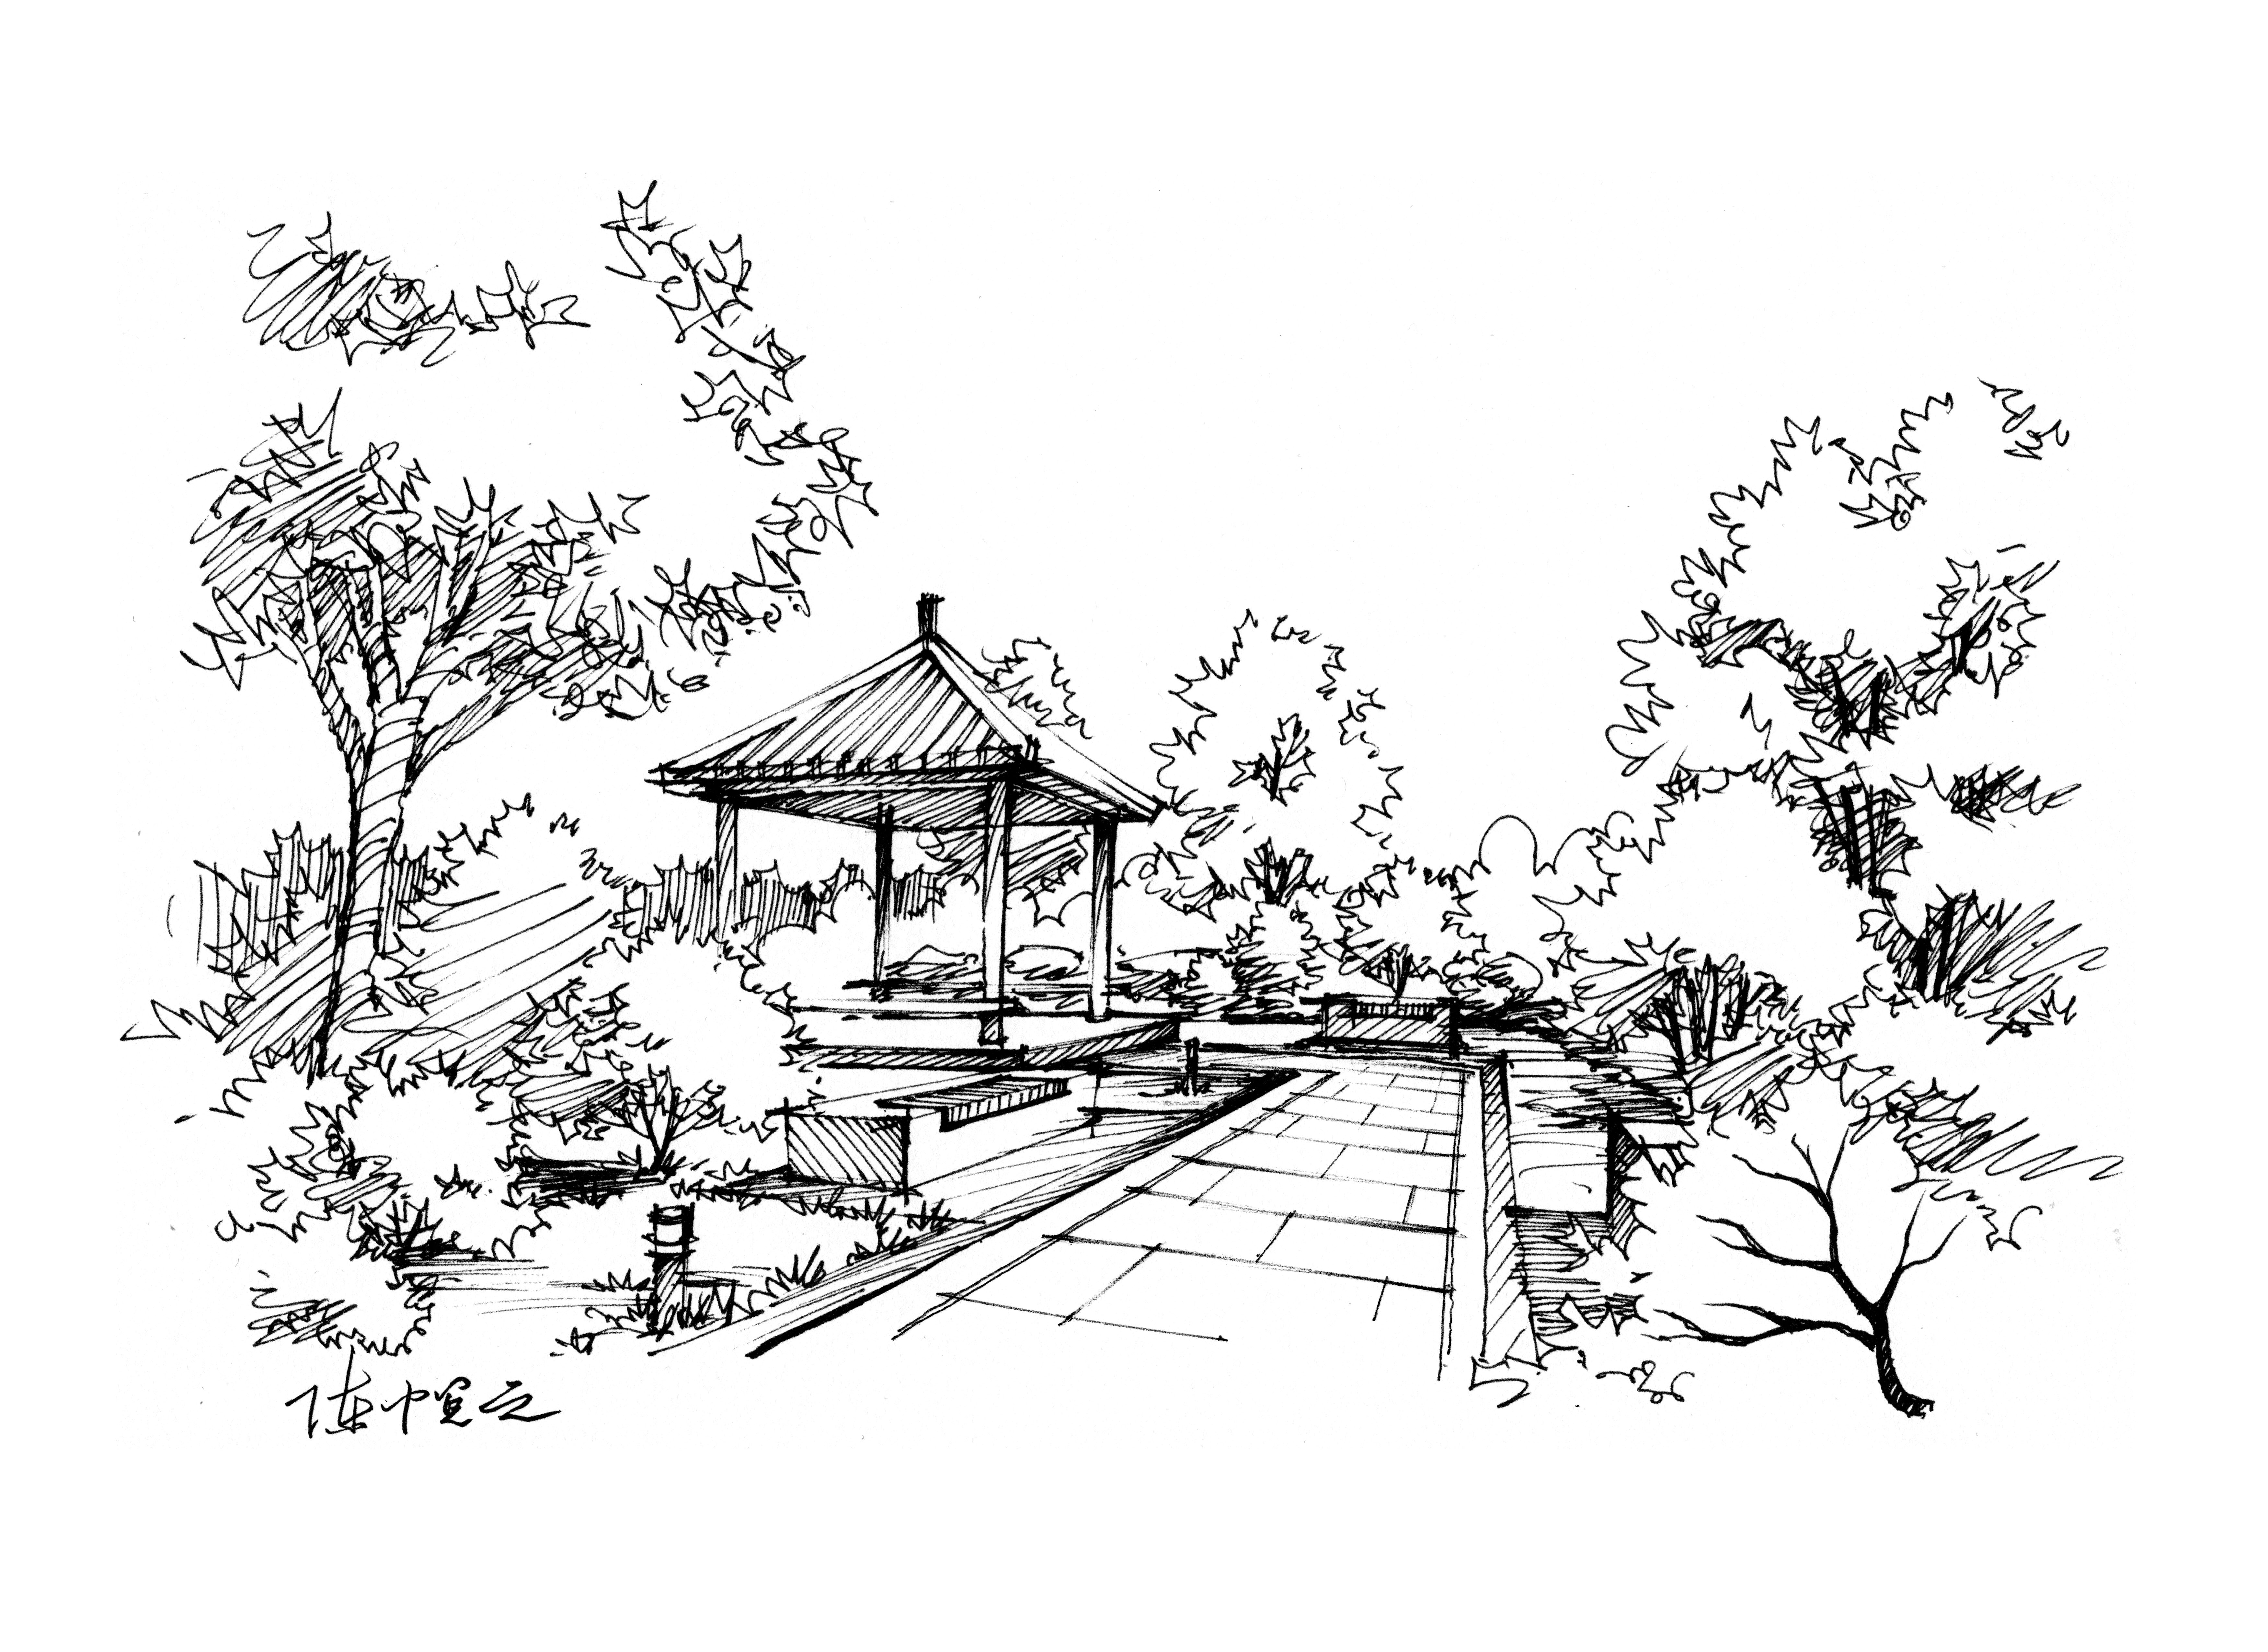 【青岛手绘】公园凉亭景观设计手绘 - 风景园林手绘表现